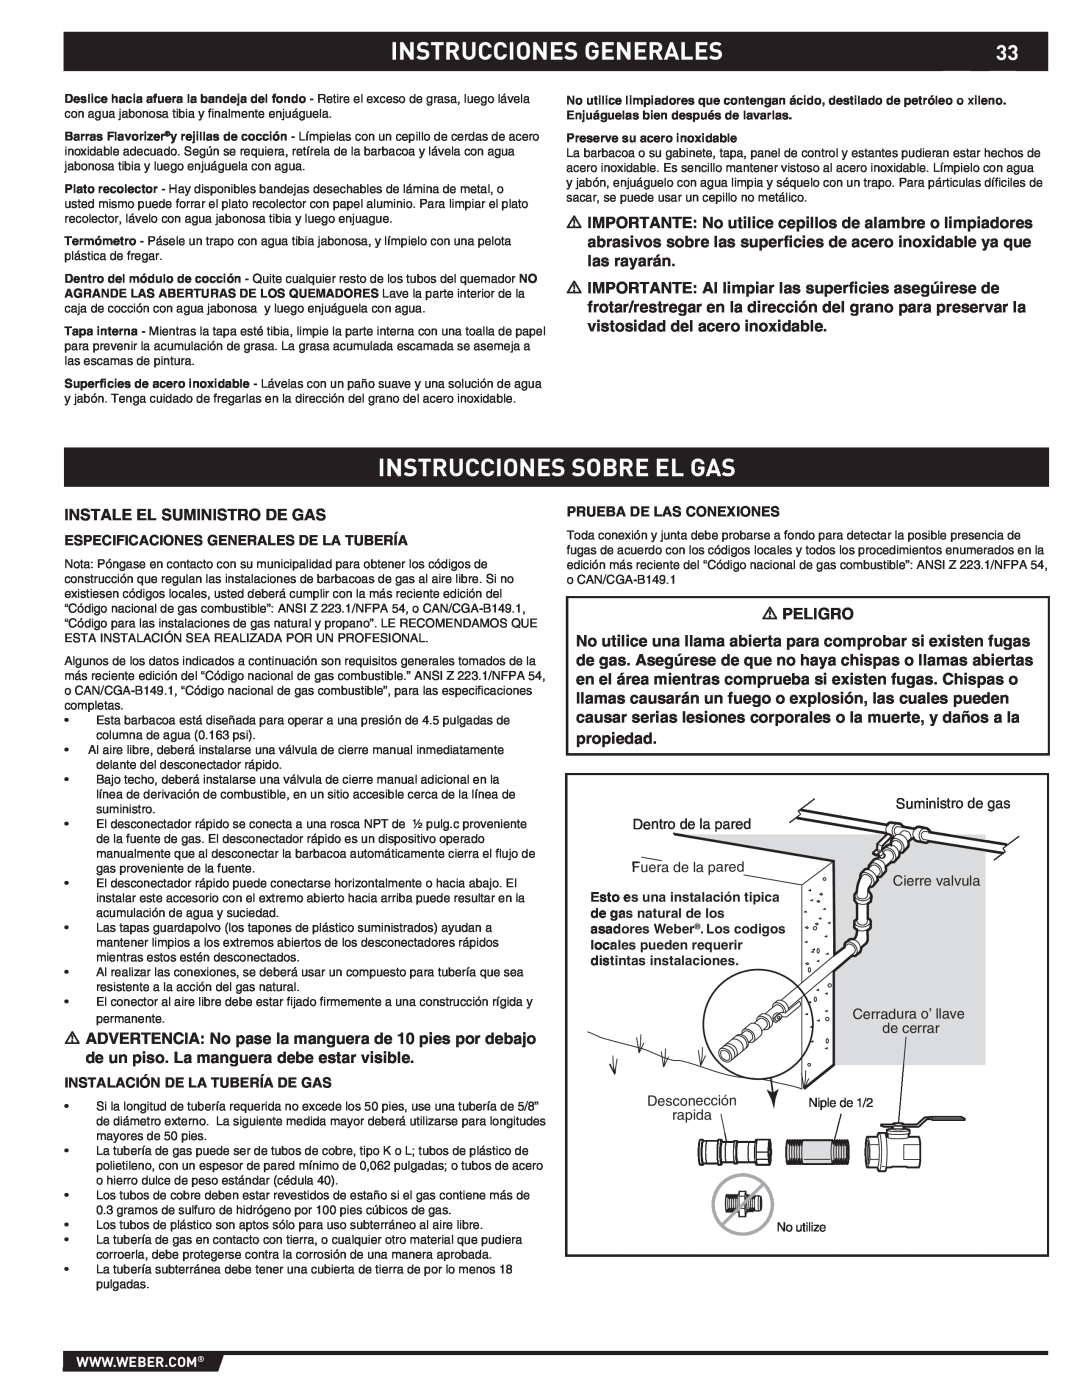 Weber S-470TM manual Instrucciones Sobre El Gas, Instrucciones Generales, Especificaciones Generales De La Tubería, rapida 